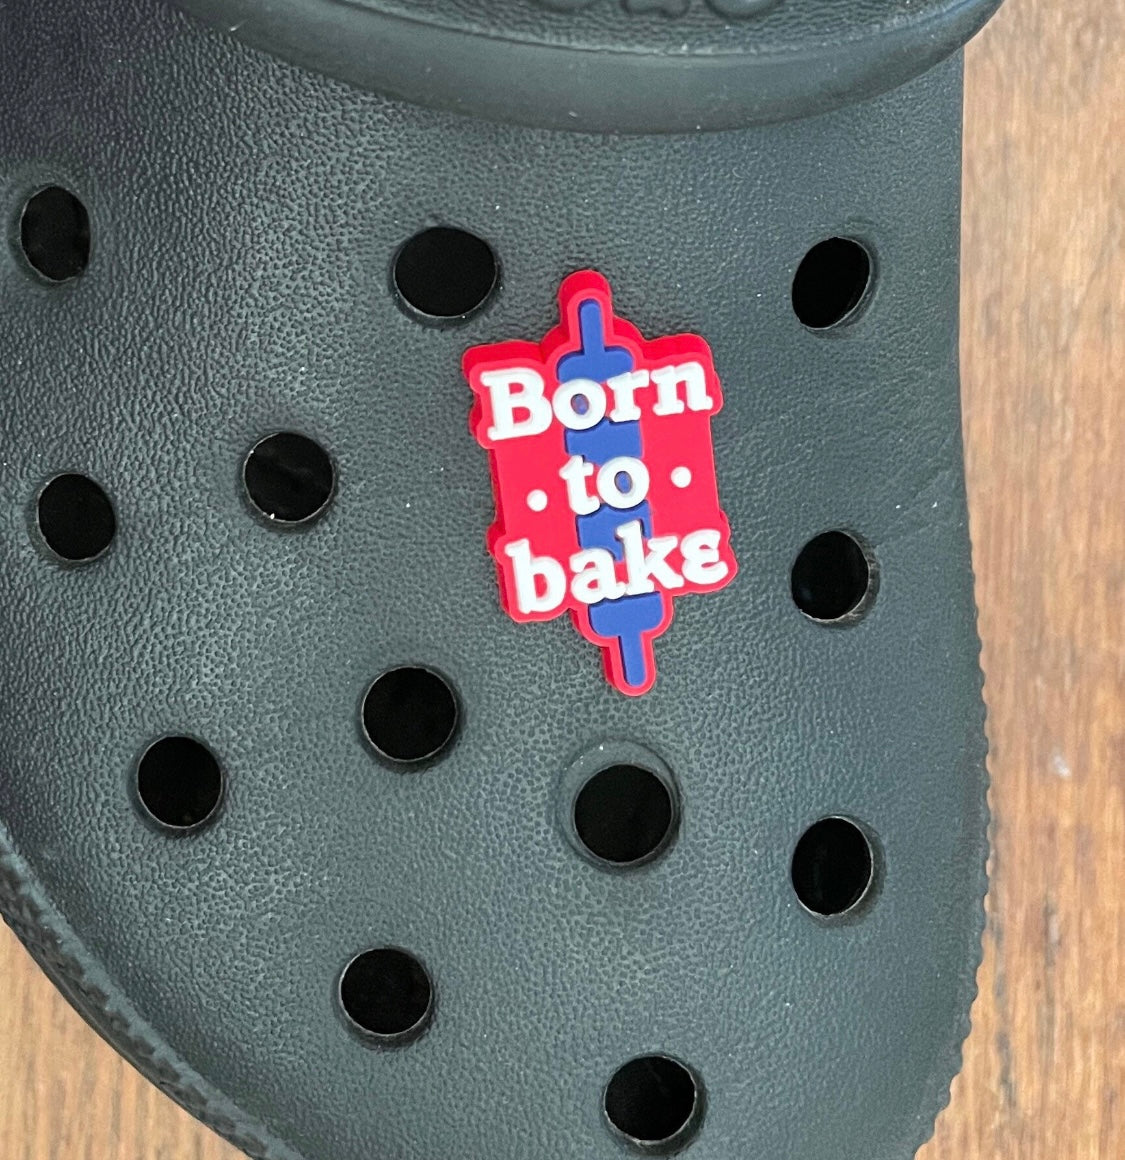 Born to bake shoe charm on a croc shoe. 